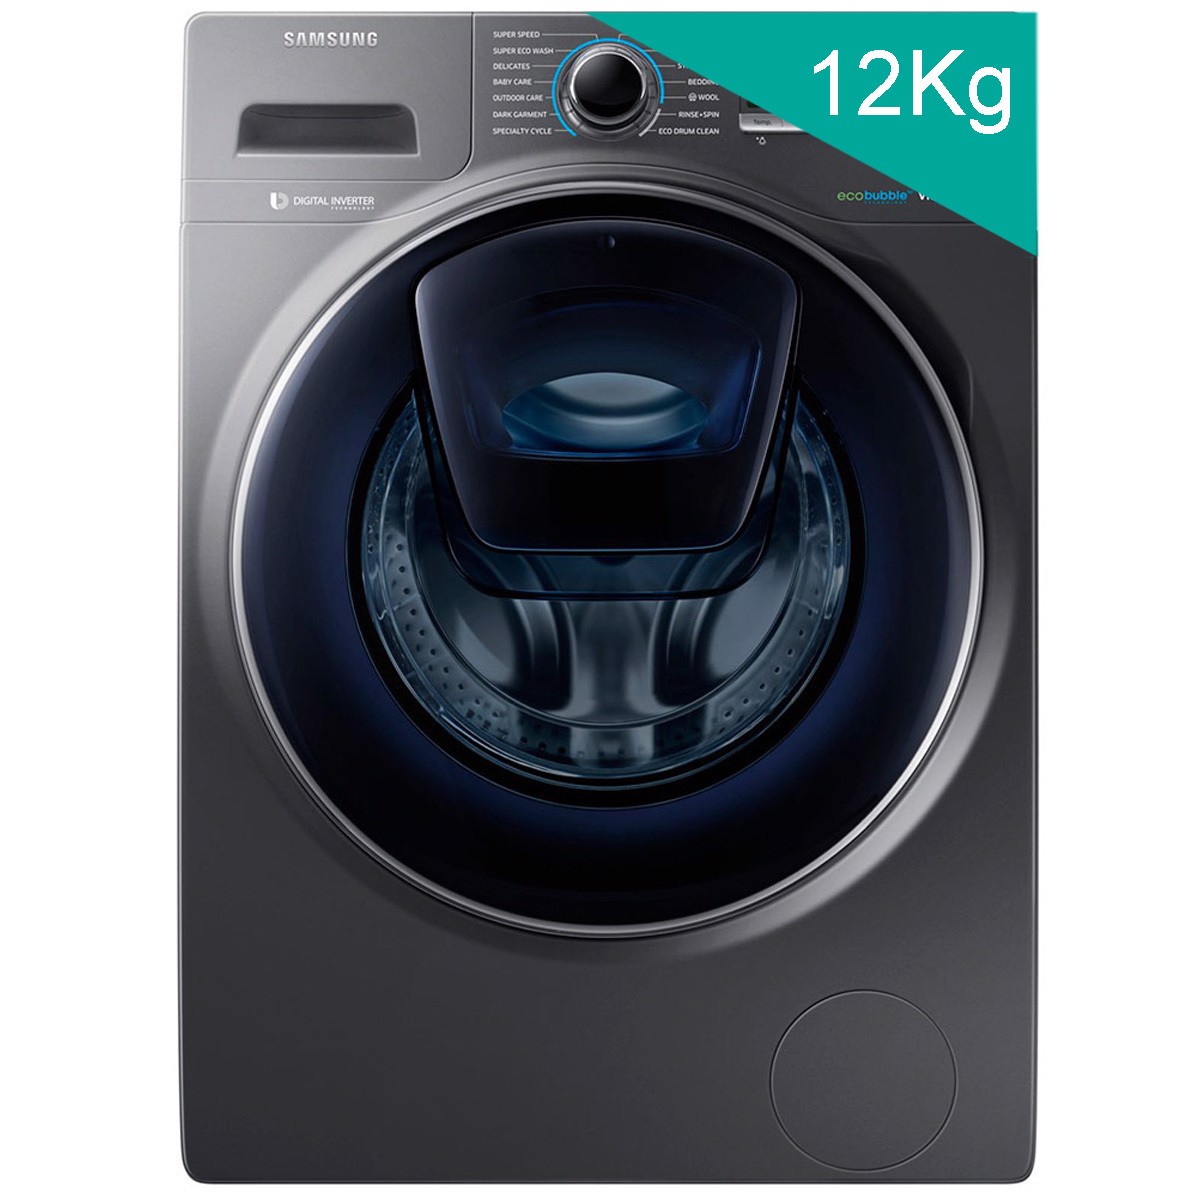 Chuyên gia nhận định máy giặt 12kg loại nào tốt nhất?-1